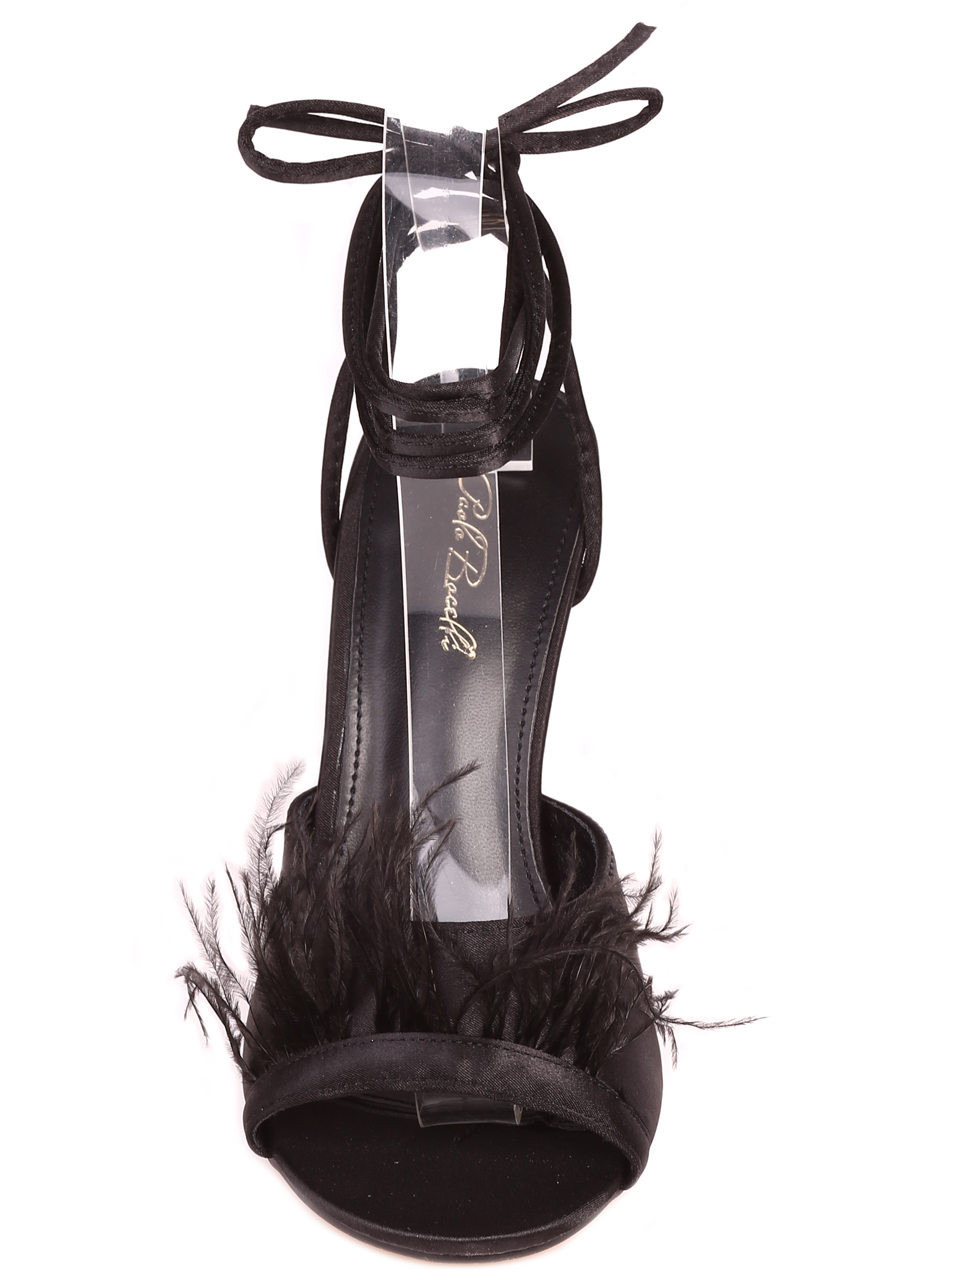 Елегантни дамски сандали с естествен пух на ток 4M-23041 black